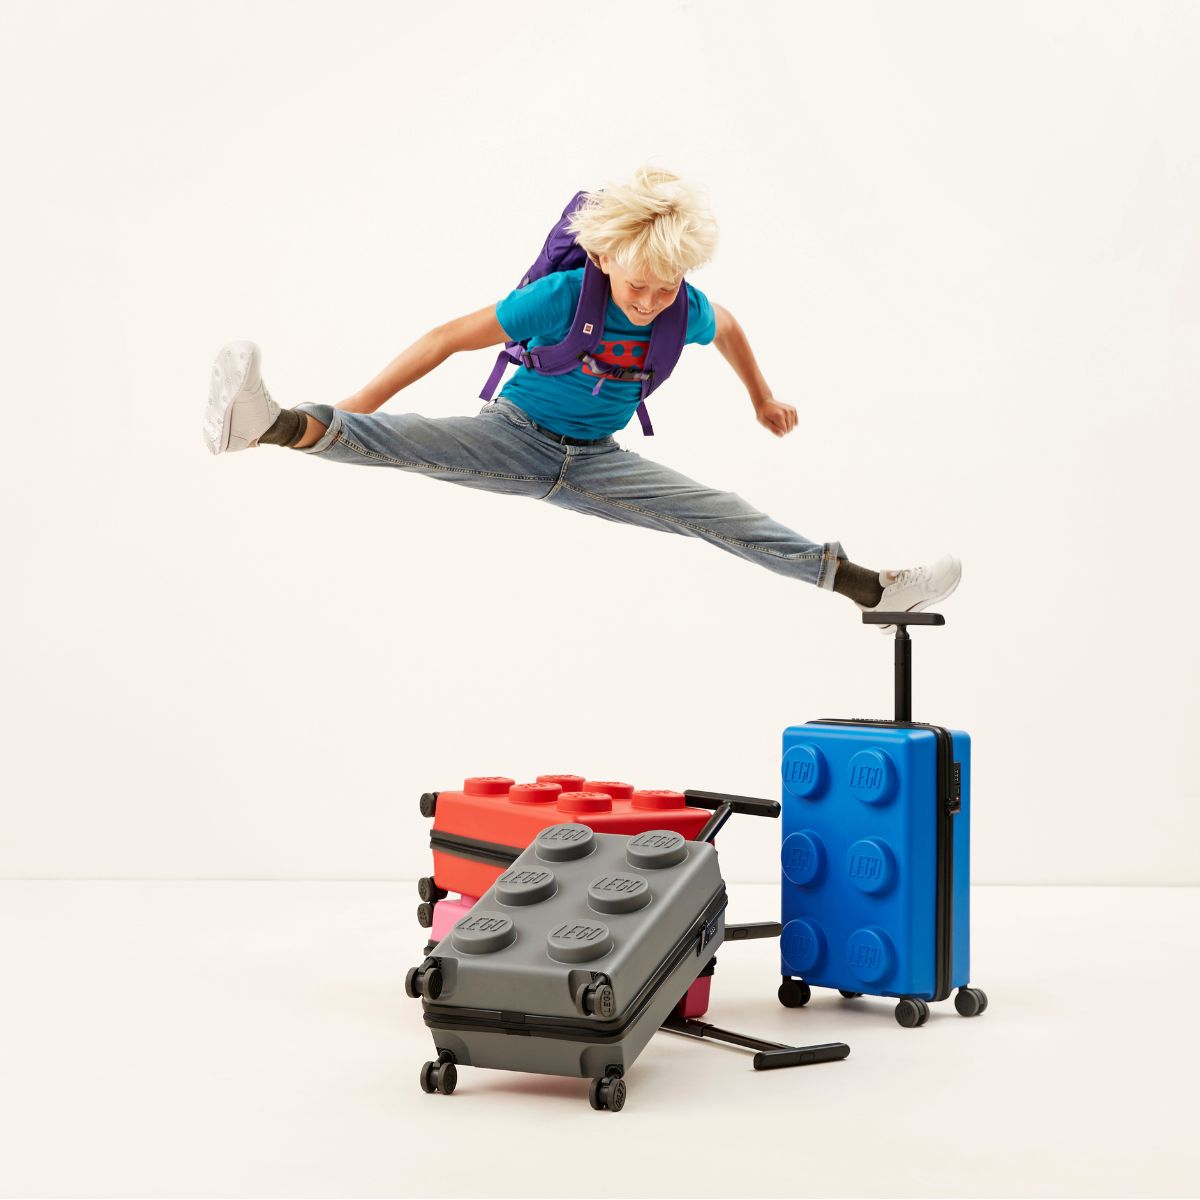 LEGO® Brick 2x3 20" Expandable Cabin Luggage, Stone Grey